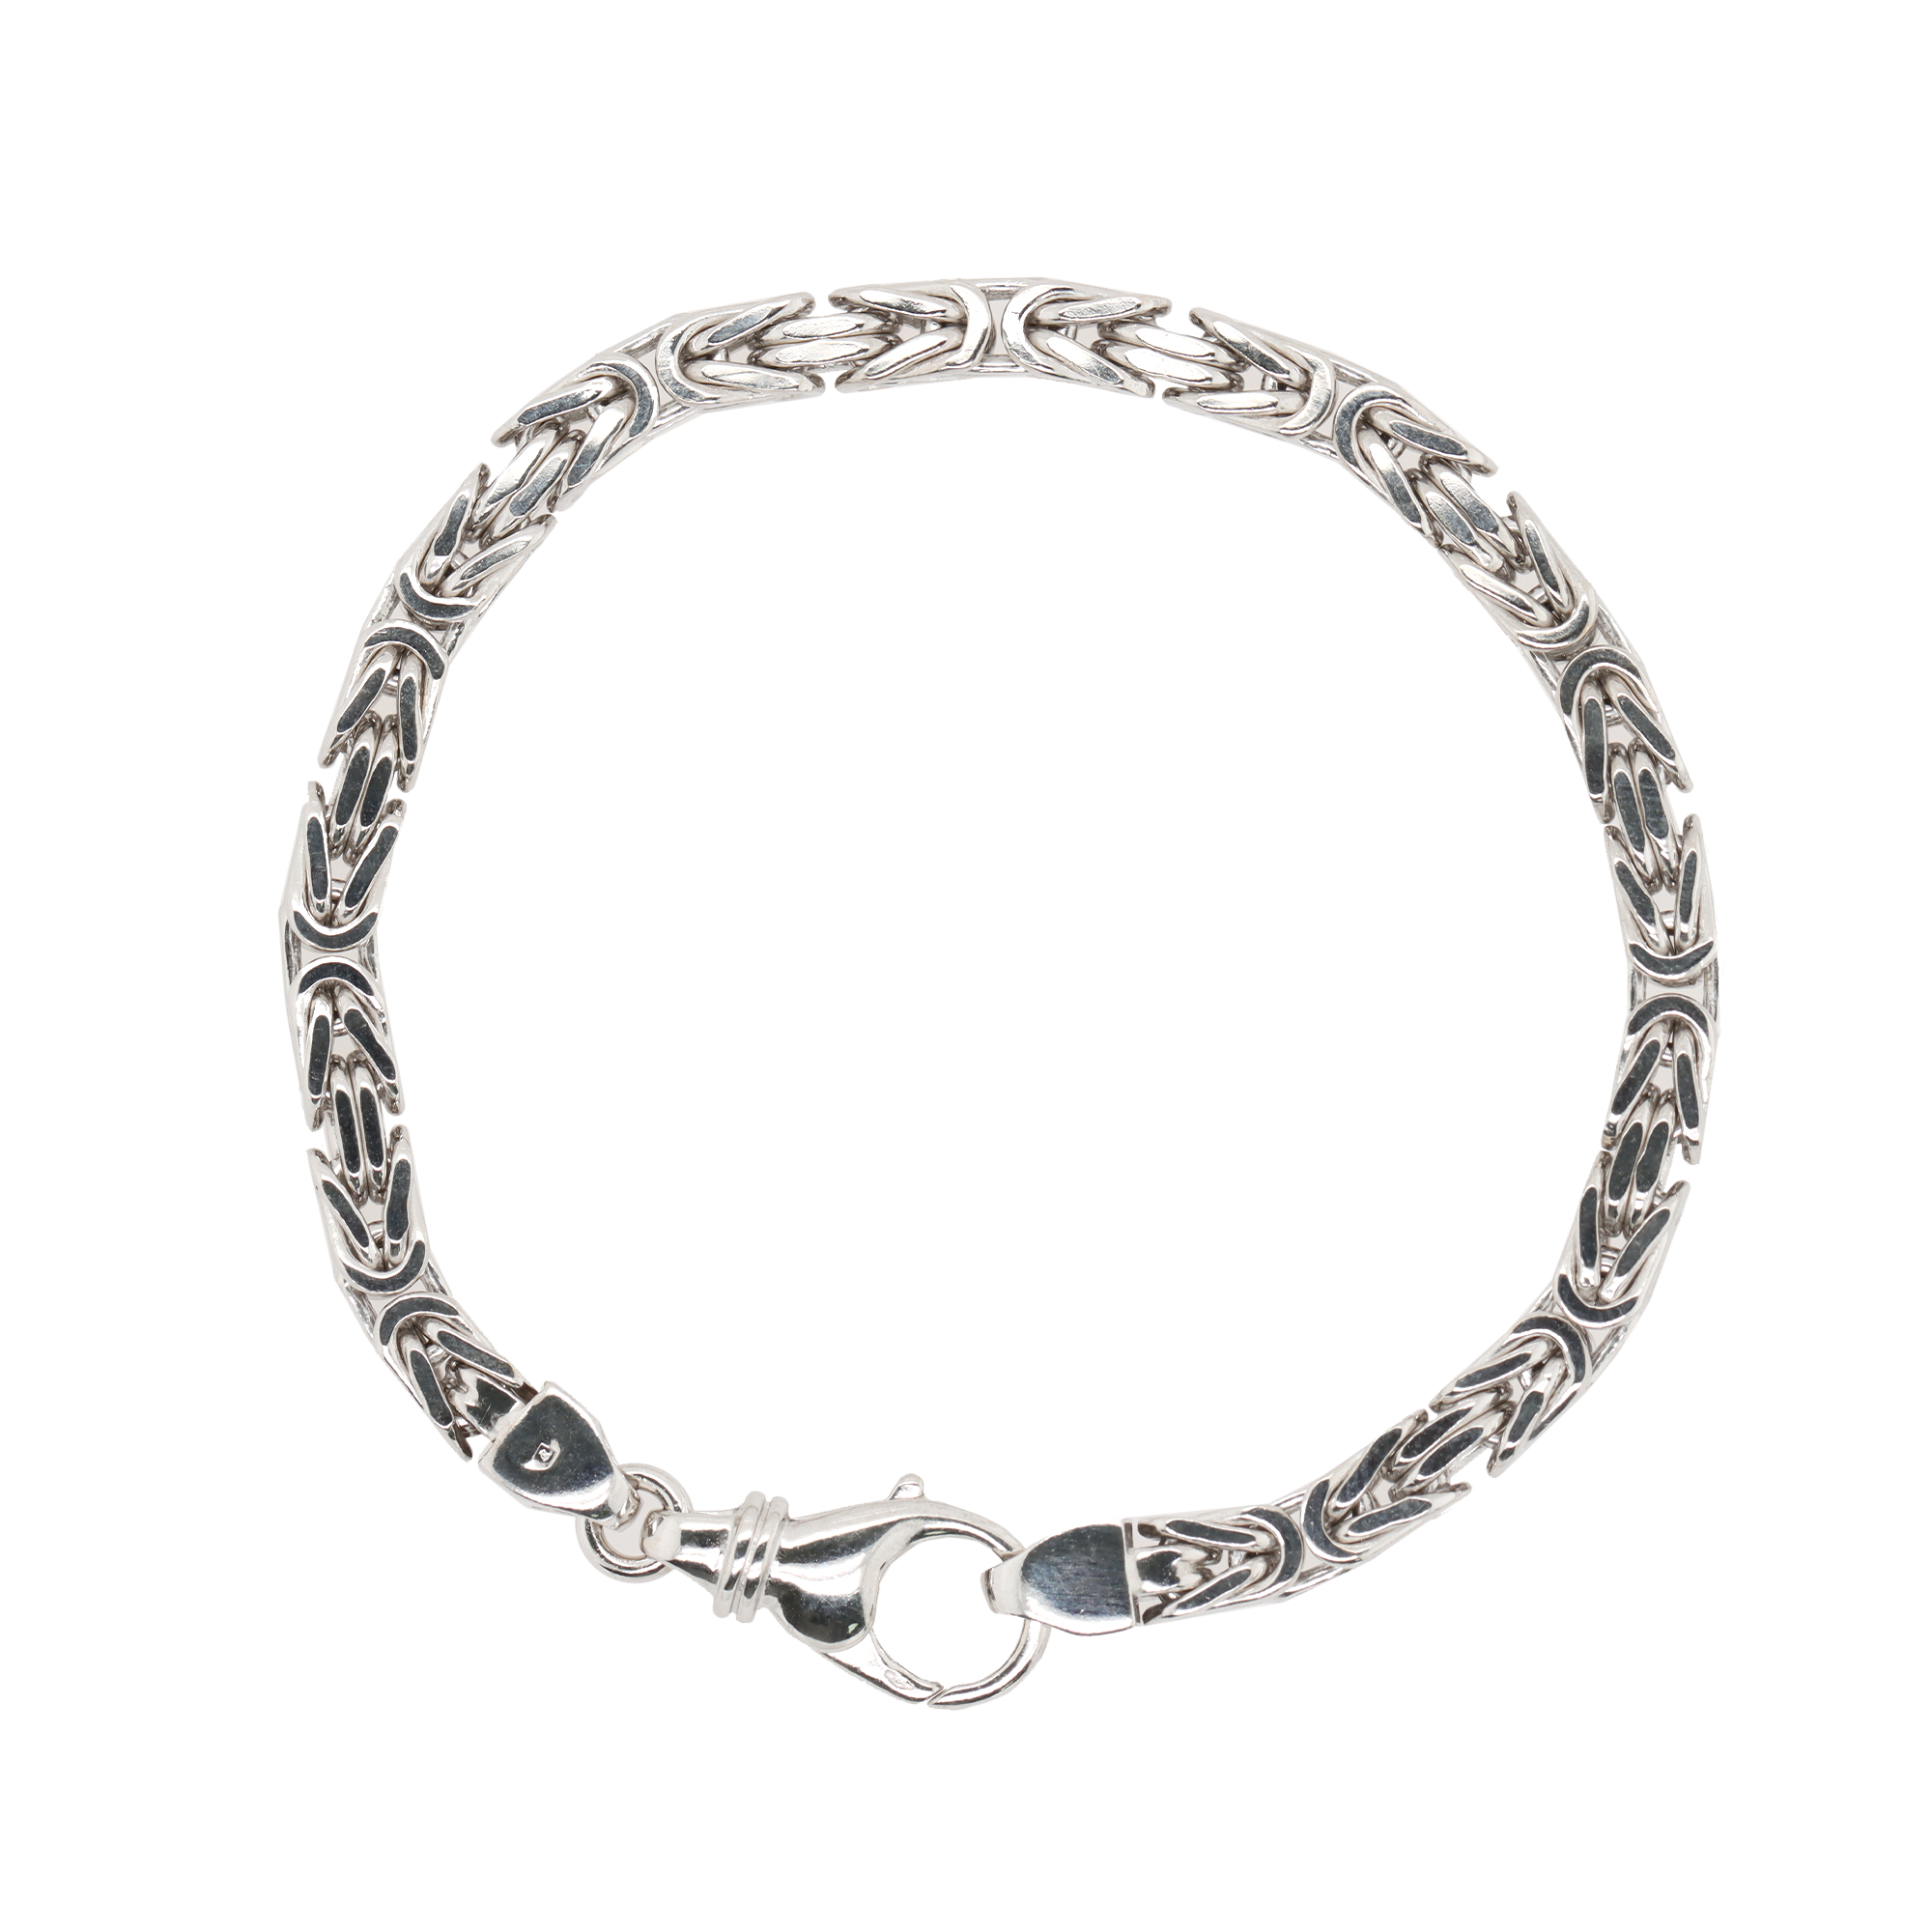 Eternity Diamond Bangle Bracelet 14K White Gold - Bracelets - Jewelry